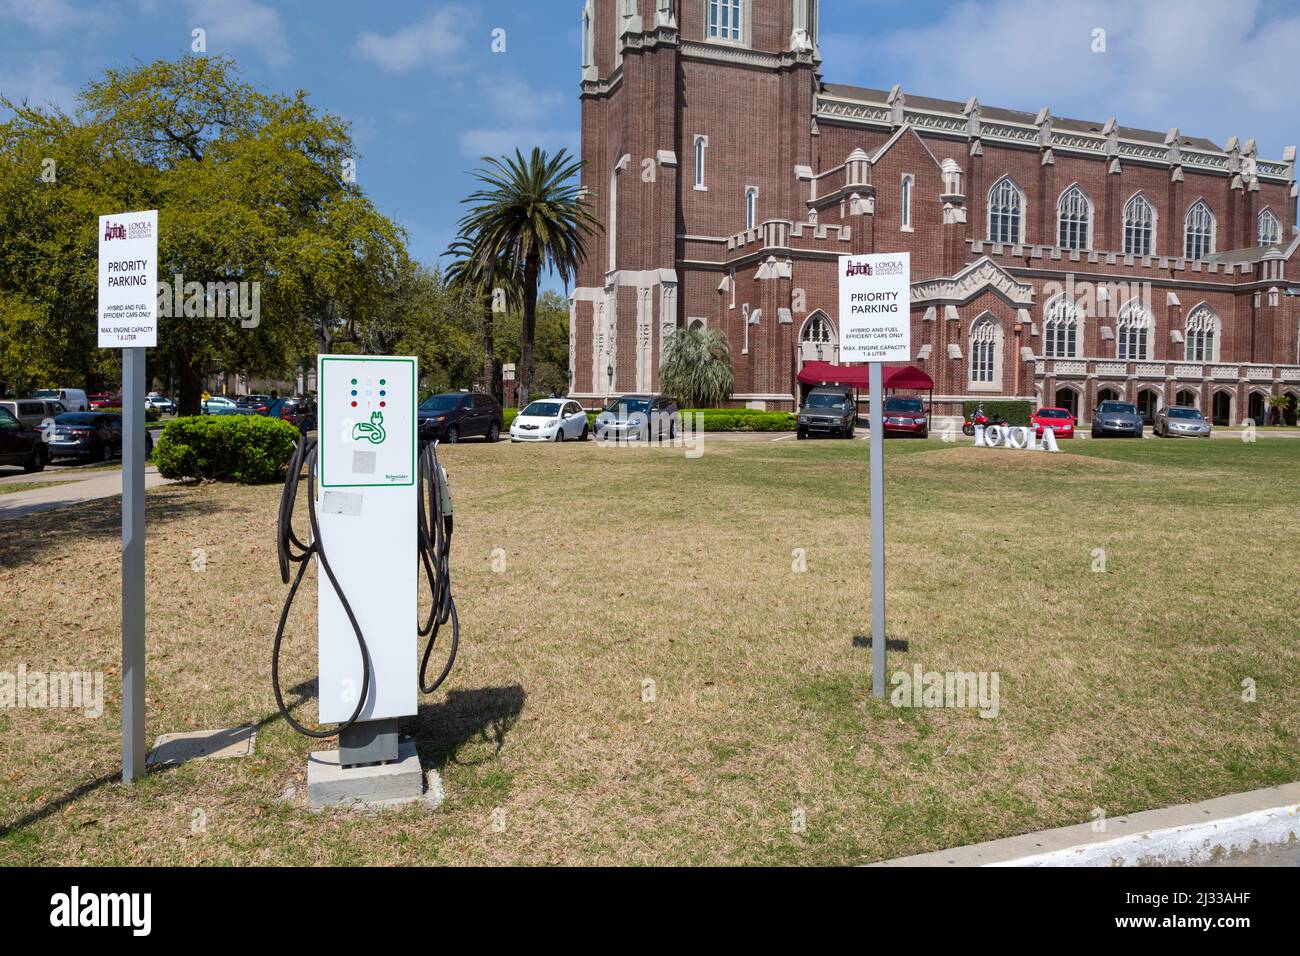 La Nouvelle-Orléans, Louisiane. Parking réservé aux voitures hybrides et électriques éconergétiques, Université Loyola. Station de recharge de la batterie. Banque D'Images